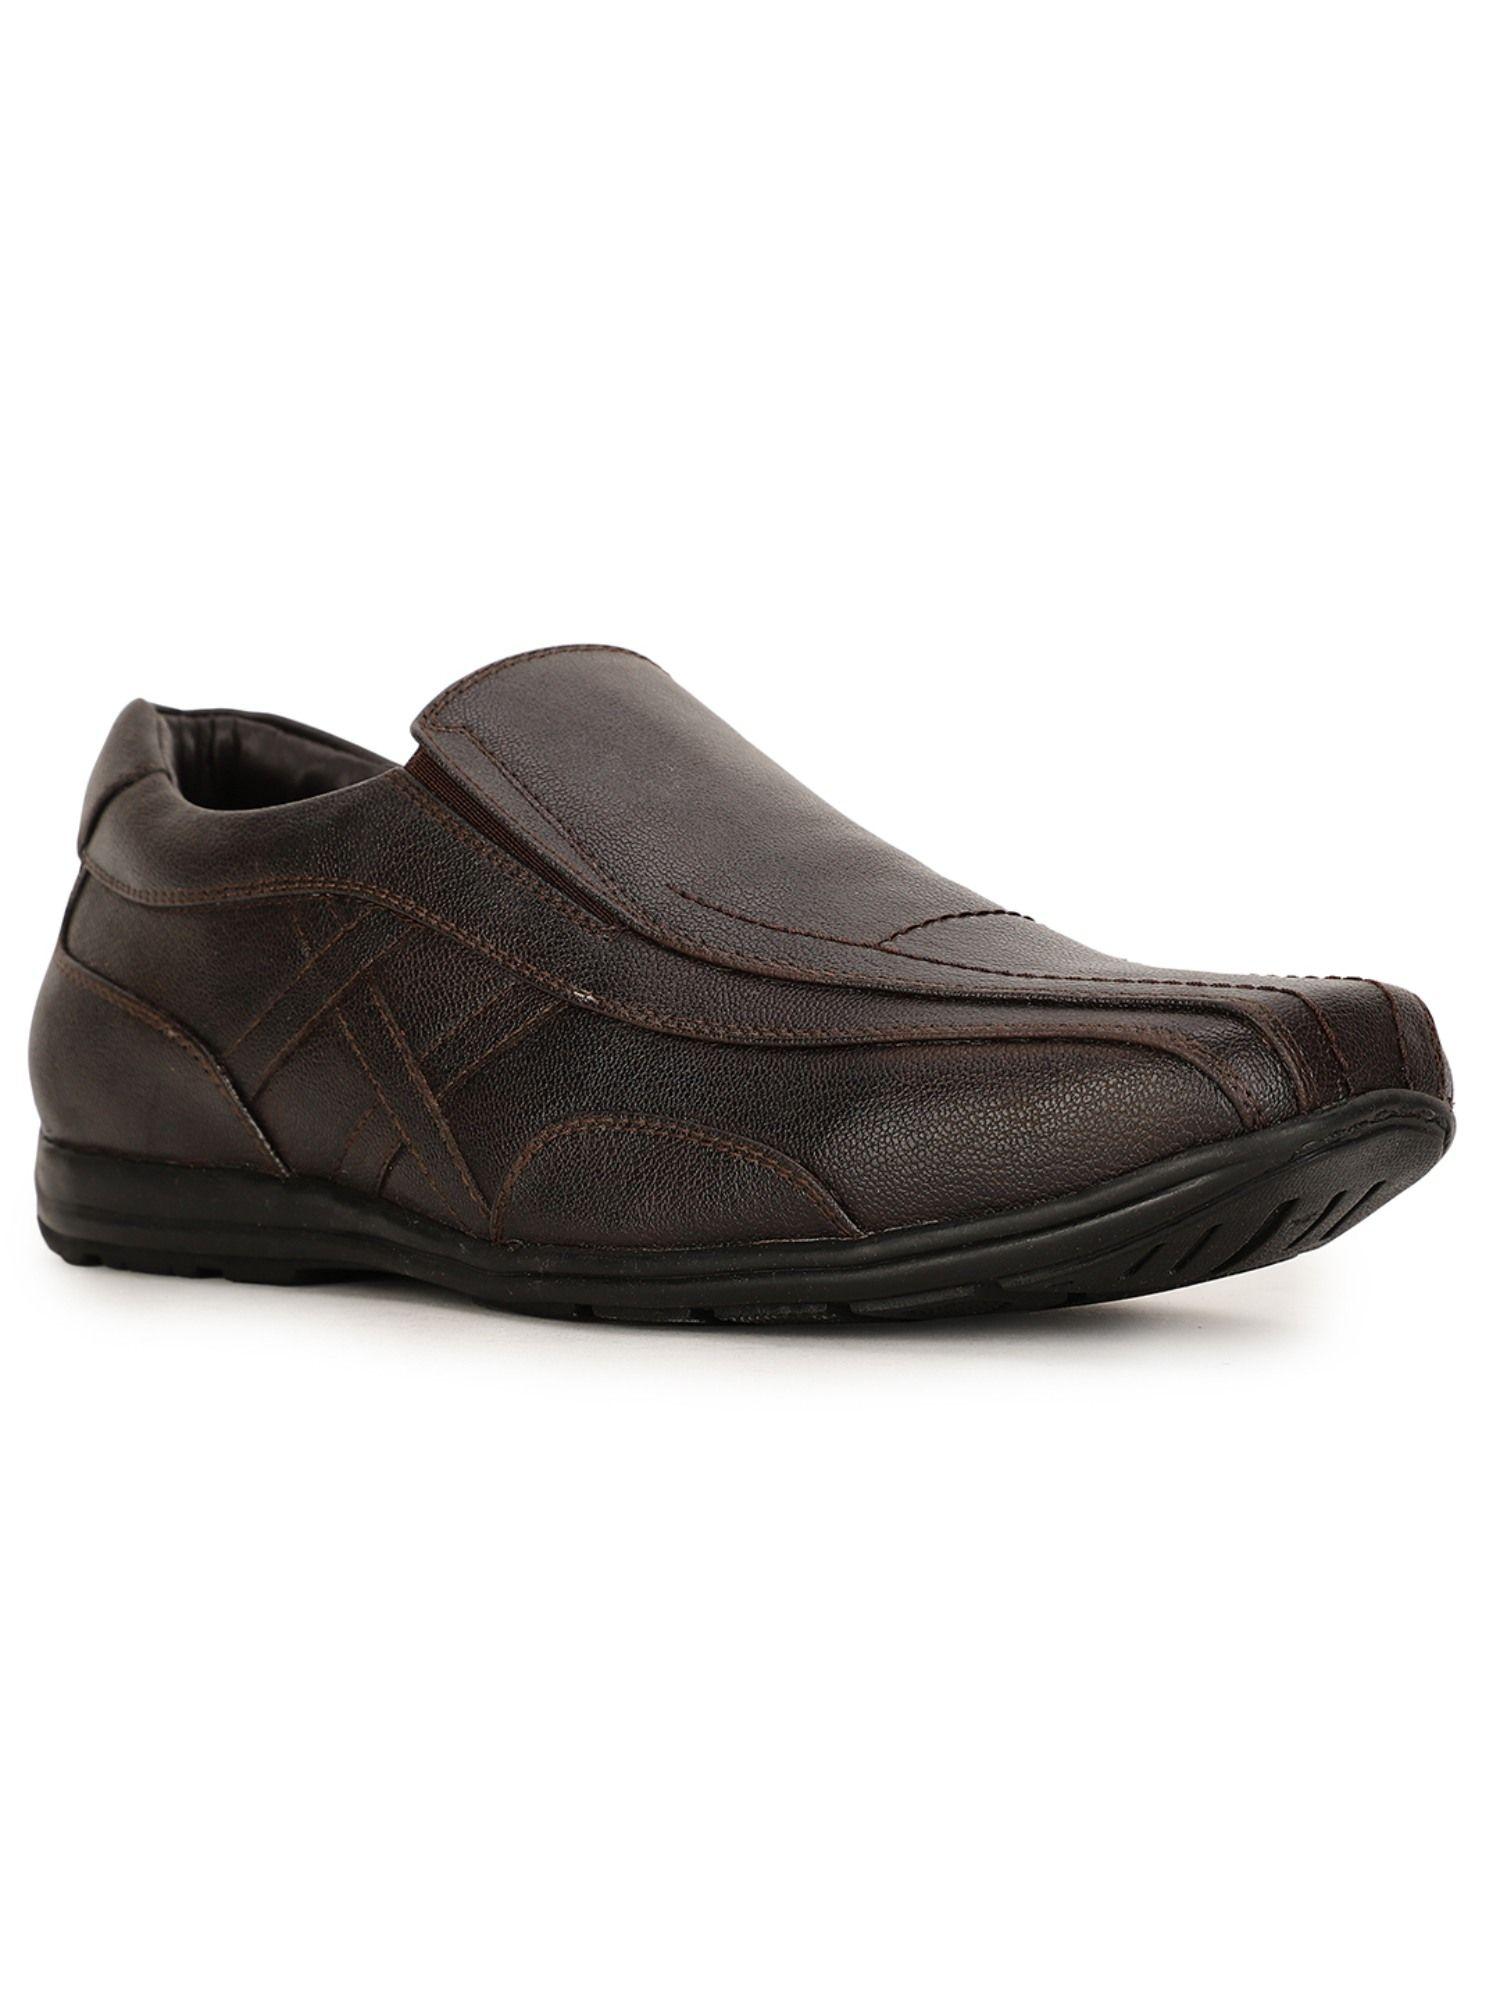 men brown slip-on formal shoes